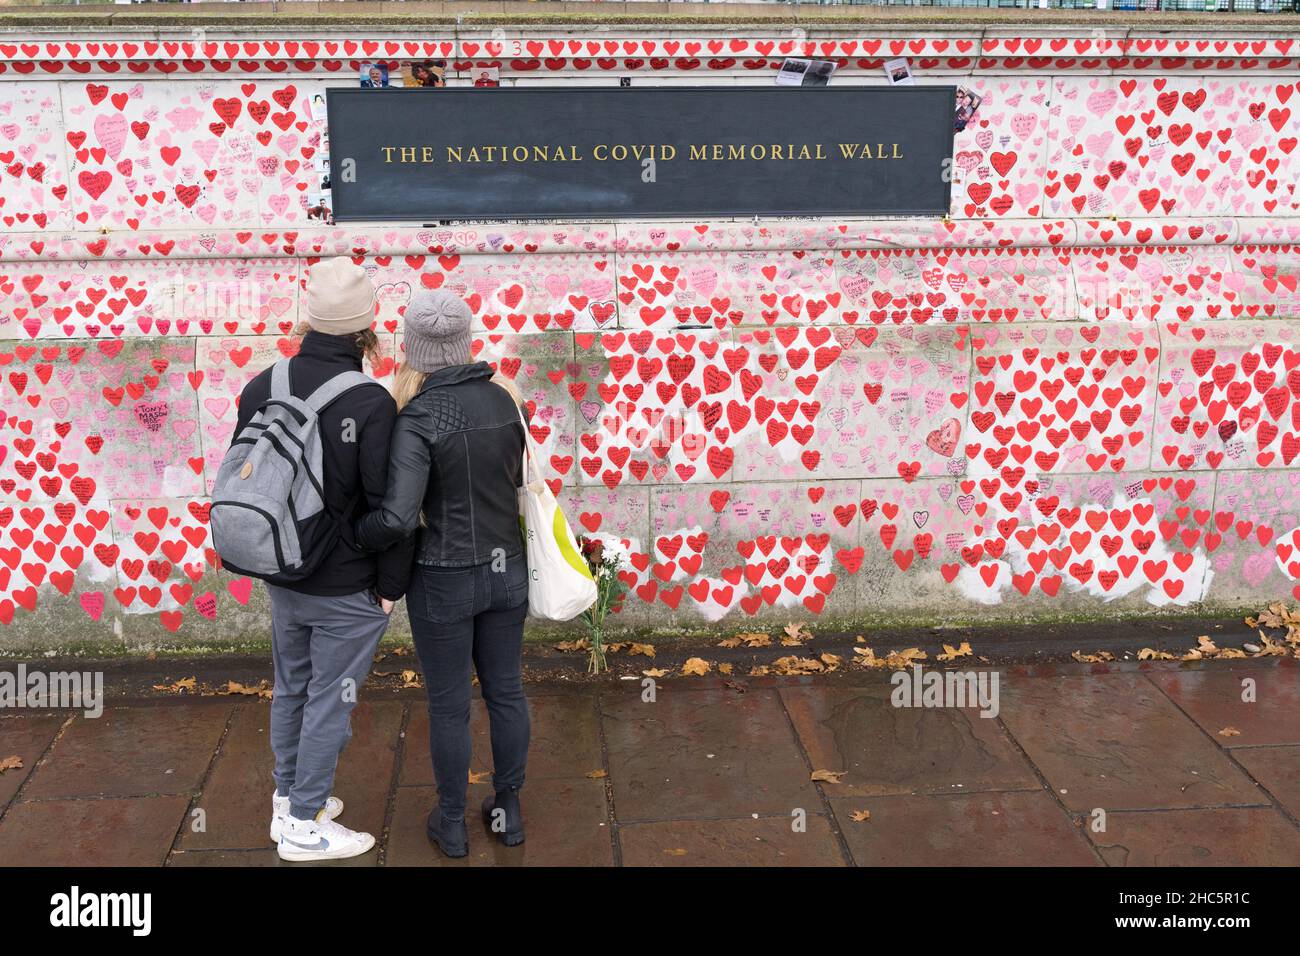 Die Nationale COVID-Gedenkmauer am Südufer neben dem St. Thomas' Krankenhaus, eine Coronavirus-Gedenkmauer, an der jede rote Herzzeichnung ein darstellt Stockfoto